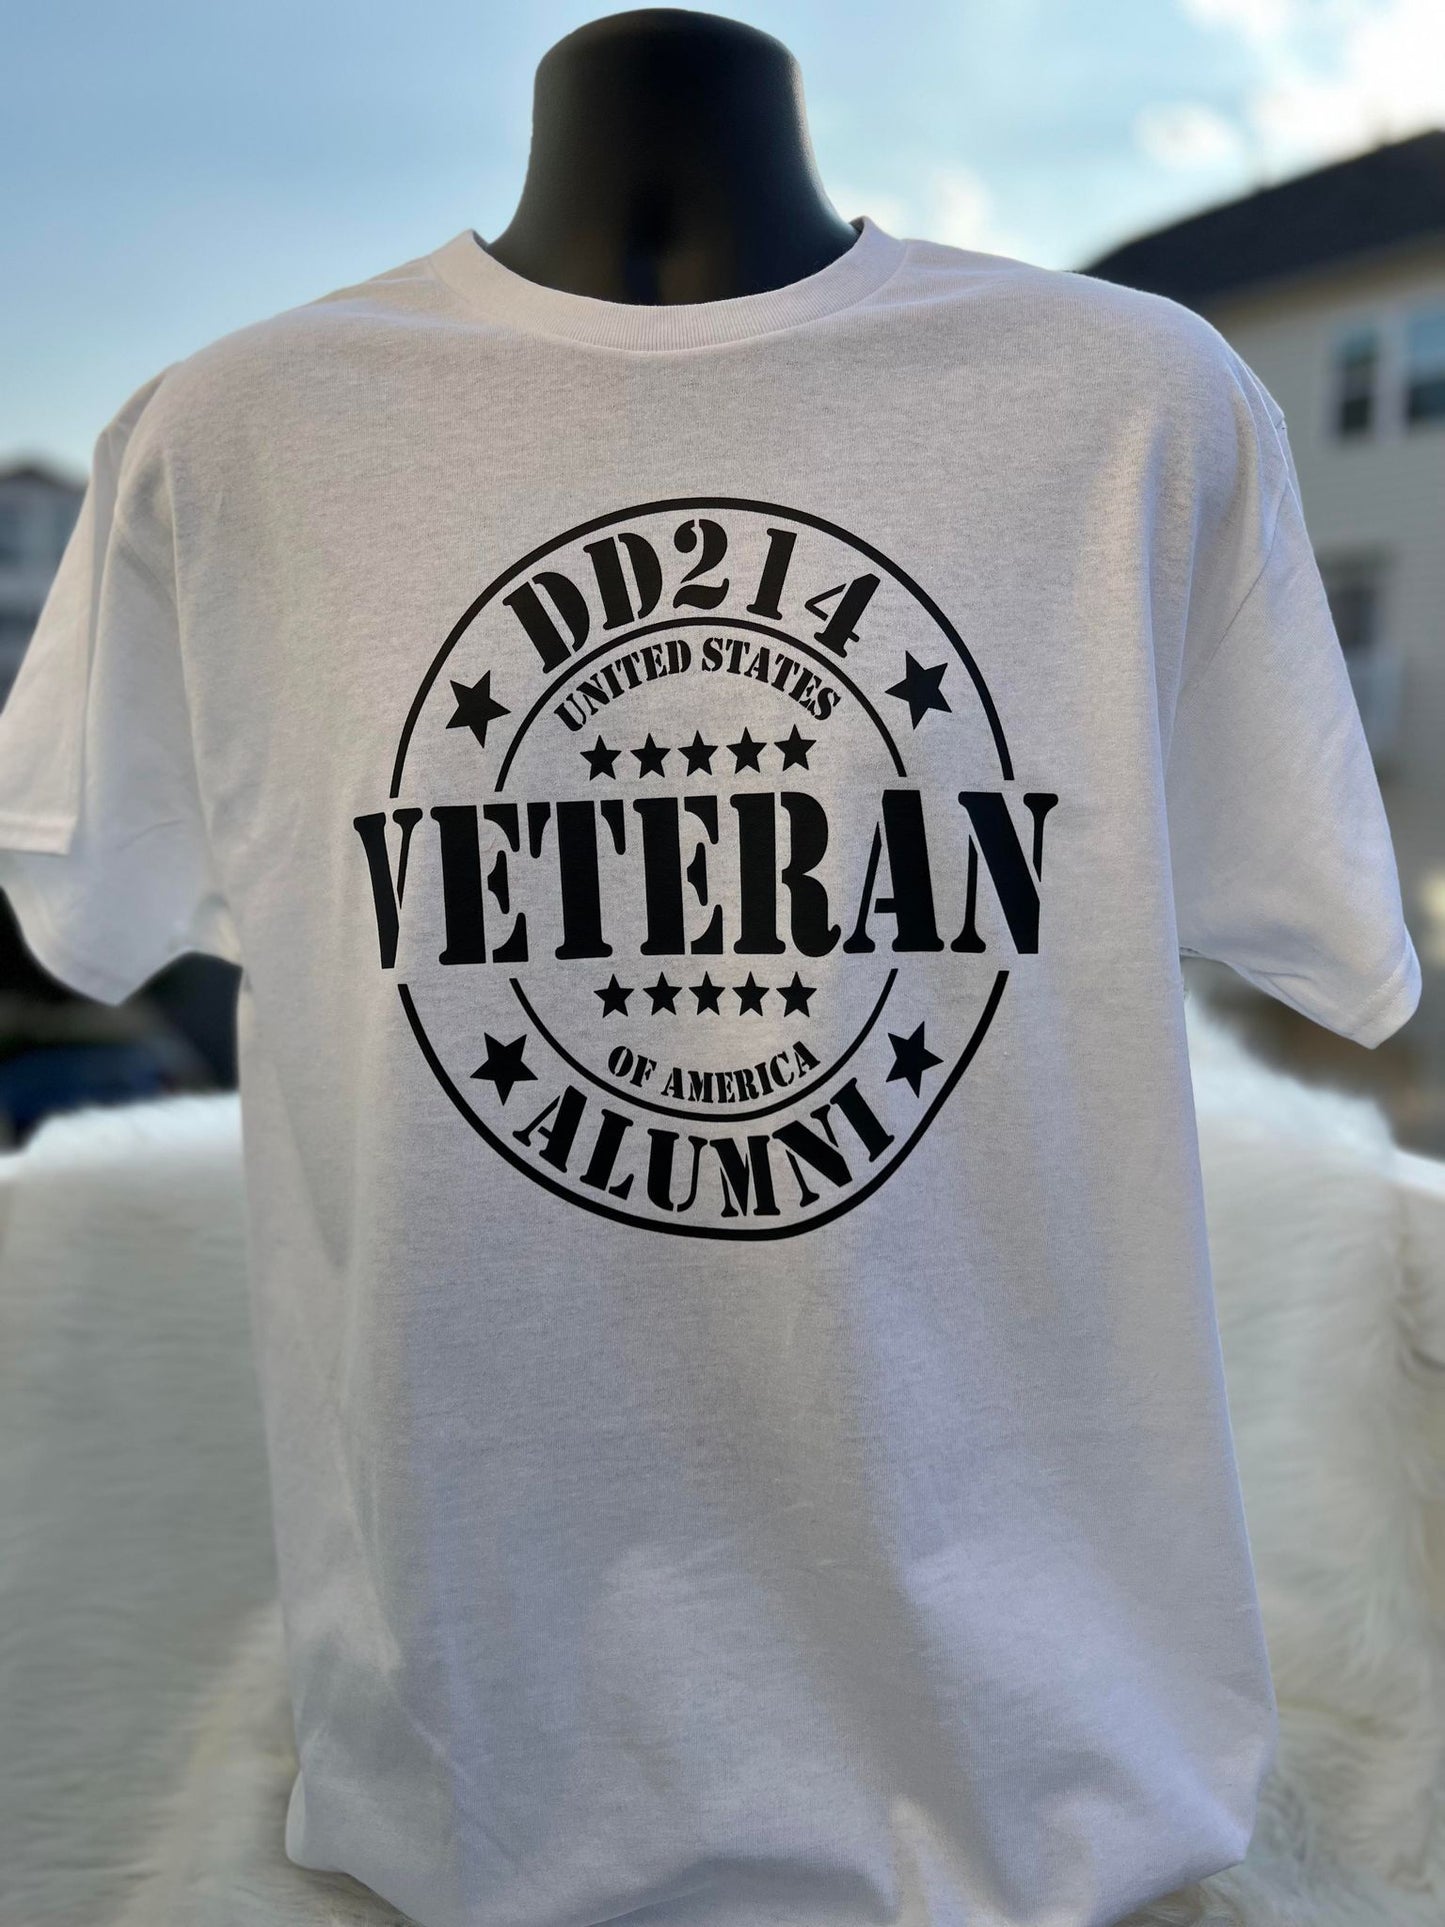 DD214 Veteran Alumni Tshirt